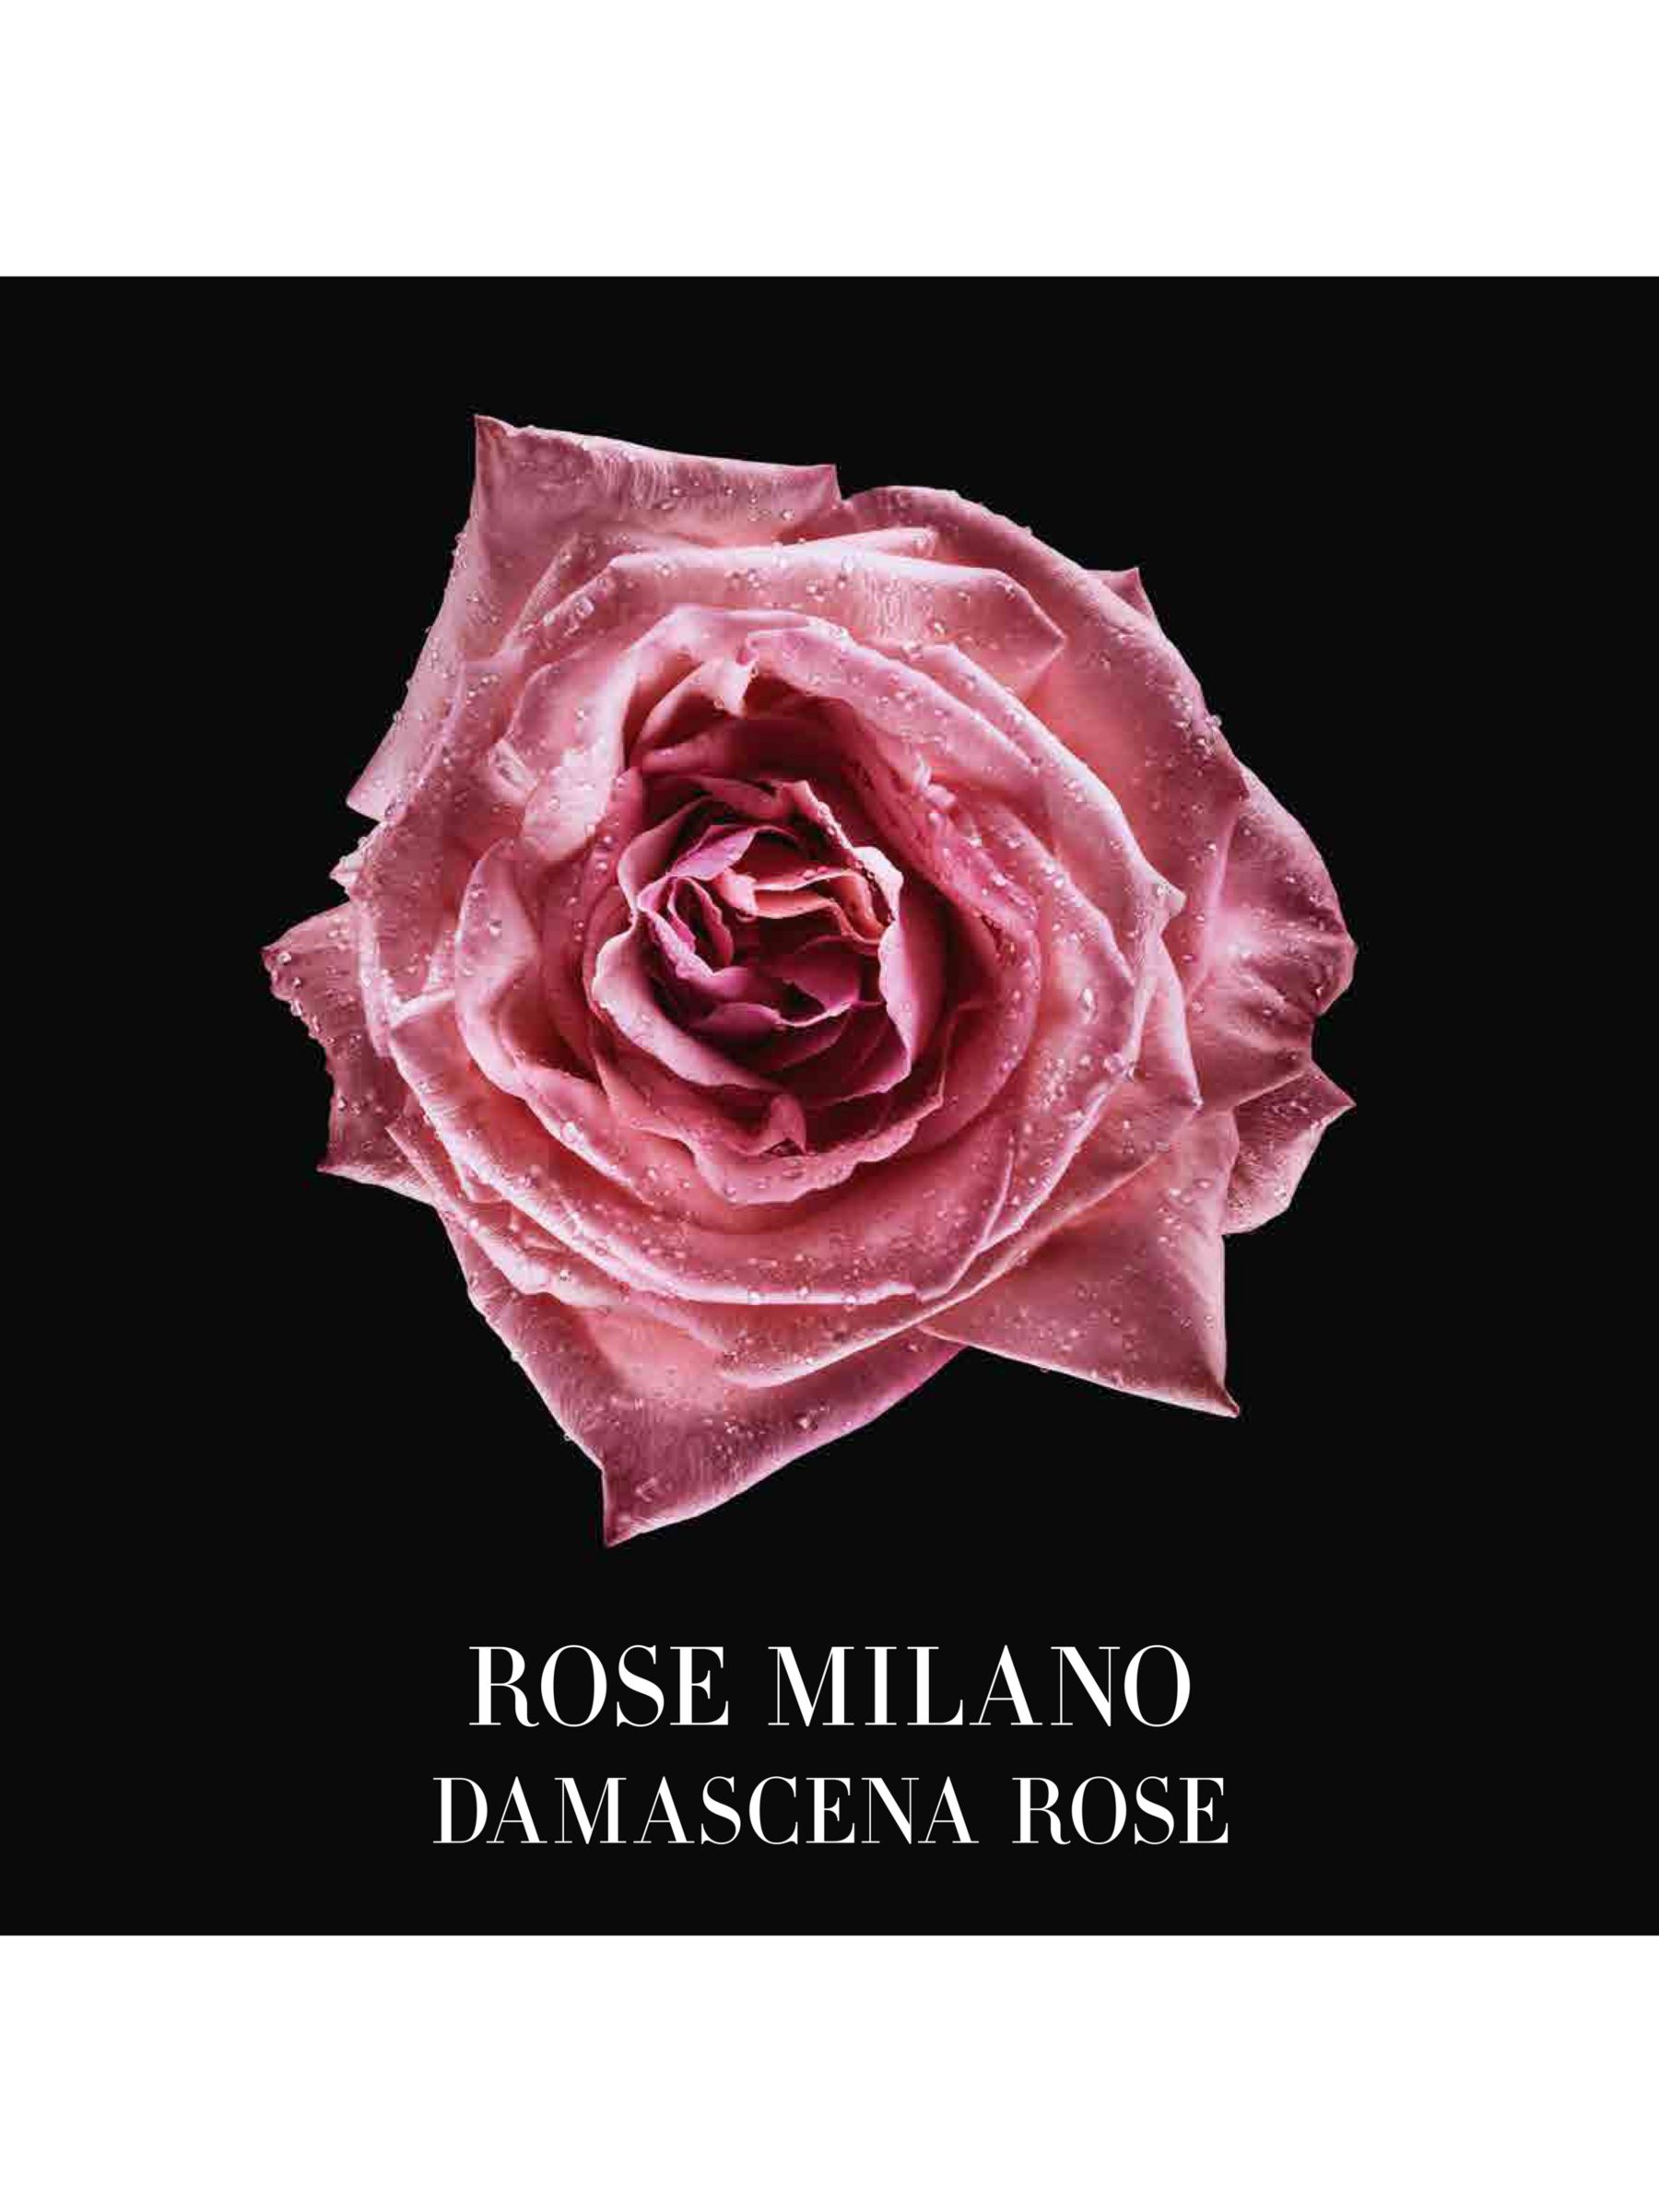 Giorgio Armani / Privé Les Eaux Rose Milano Eau de Toilette, 50ml